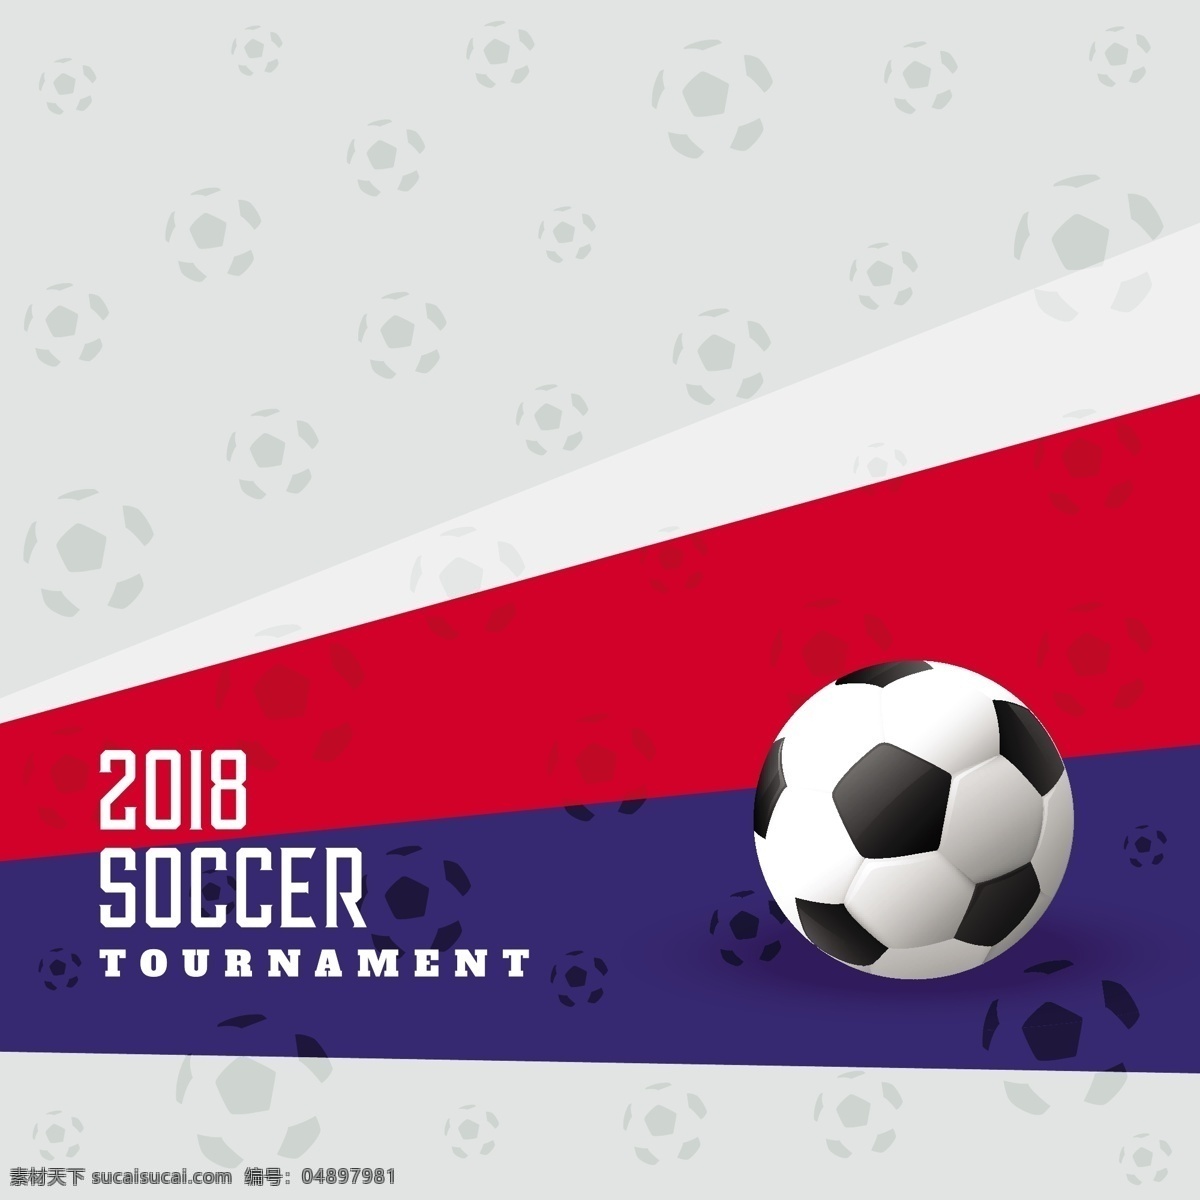 足球背景 足球赛 足球素材 体育 足球比赛 曲线 足球海报 世界杯足球赛 休闲娱乐体育 文化艺术 体育运动